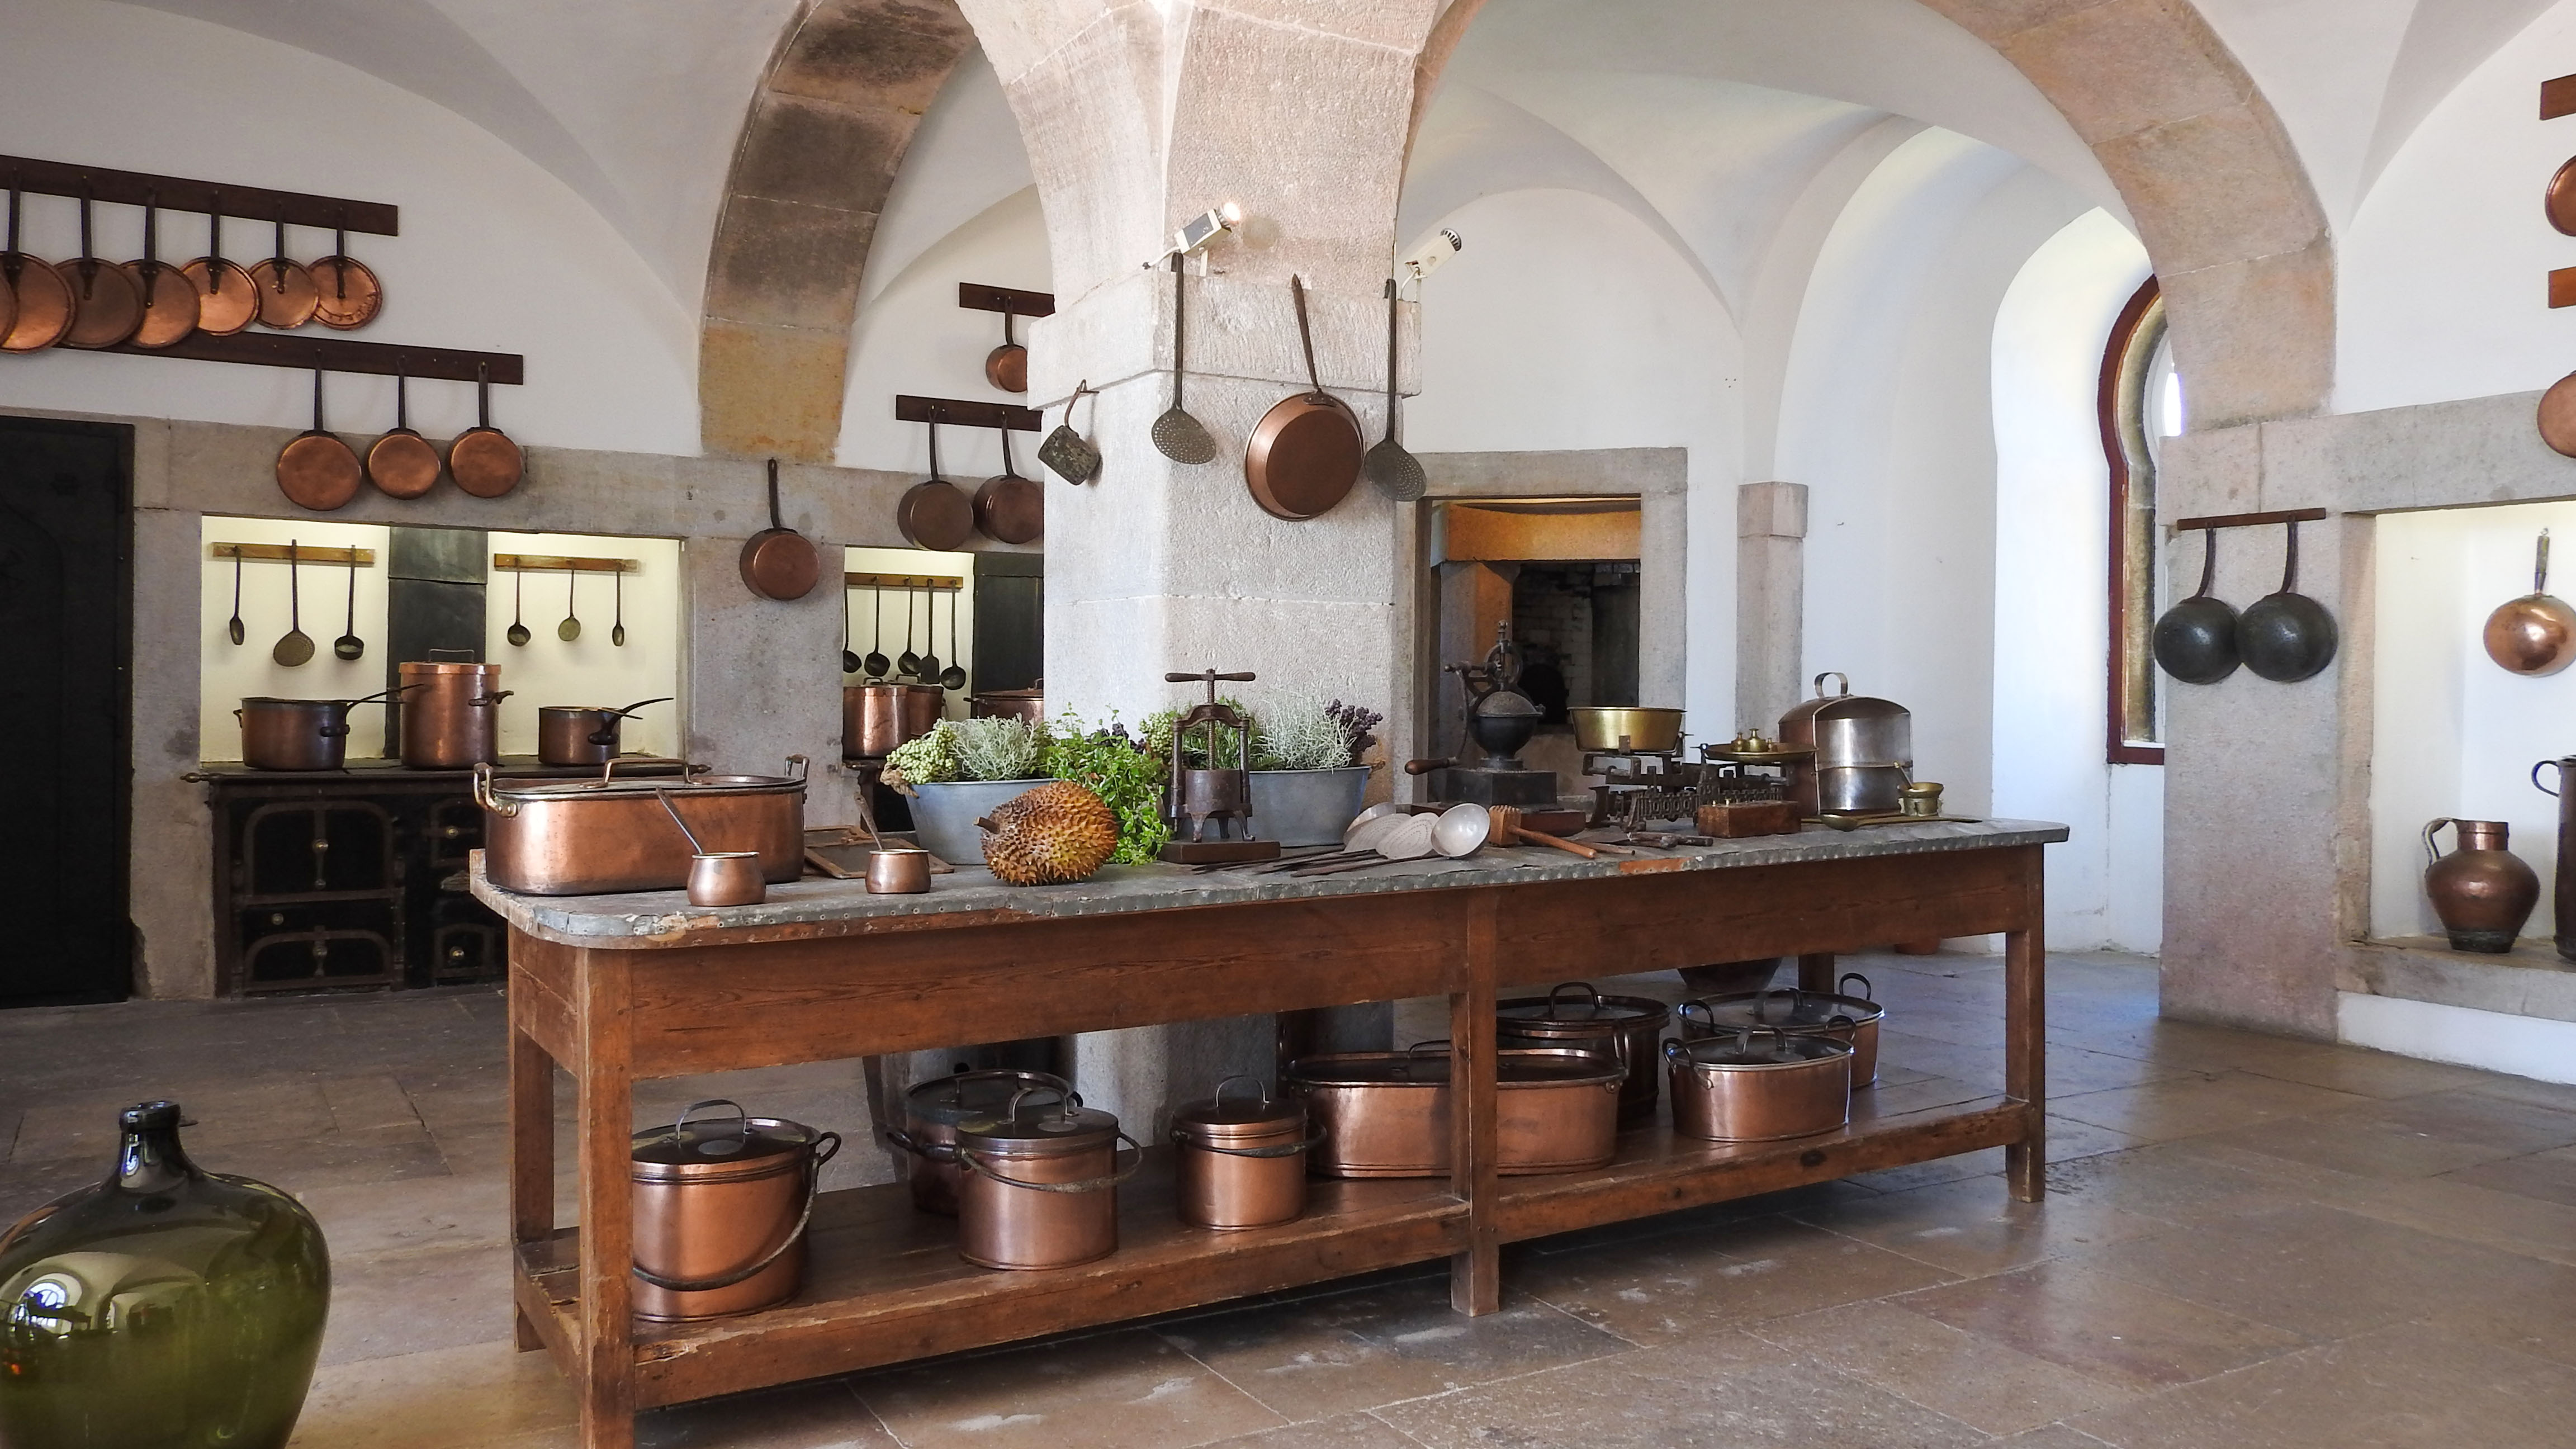 Дворцовая кухня 18 века